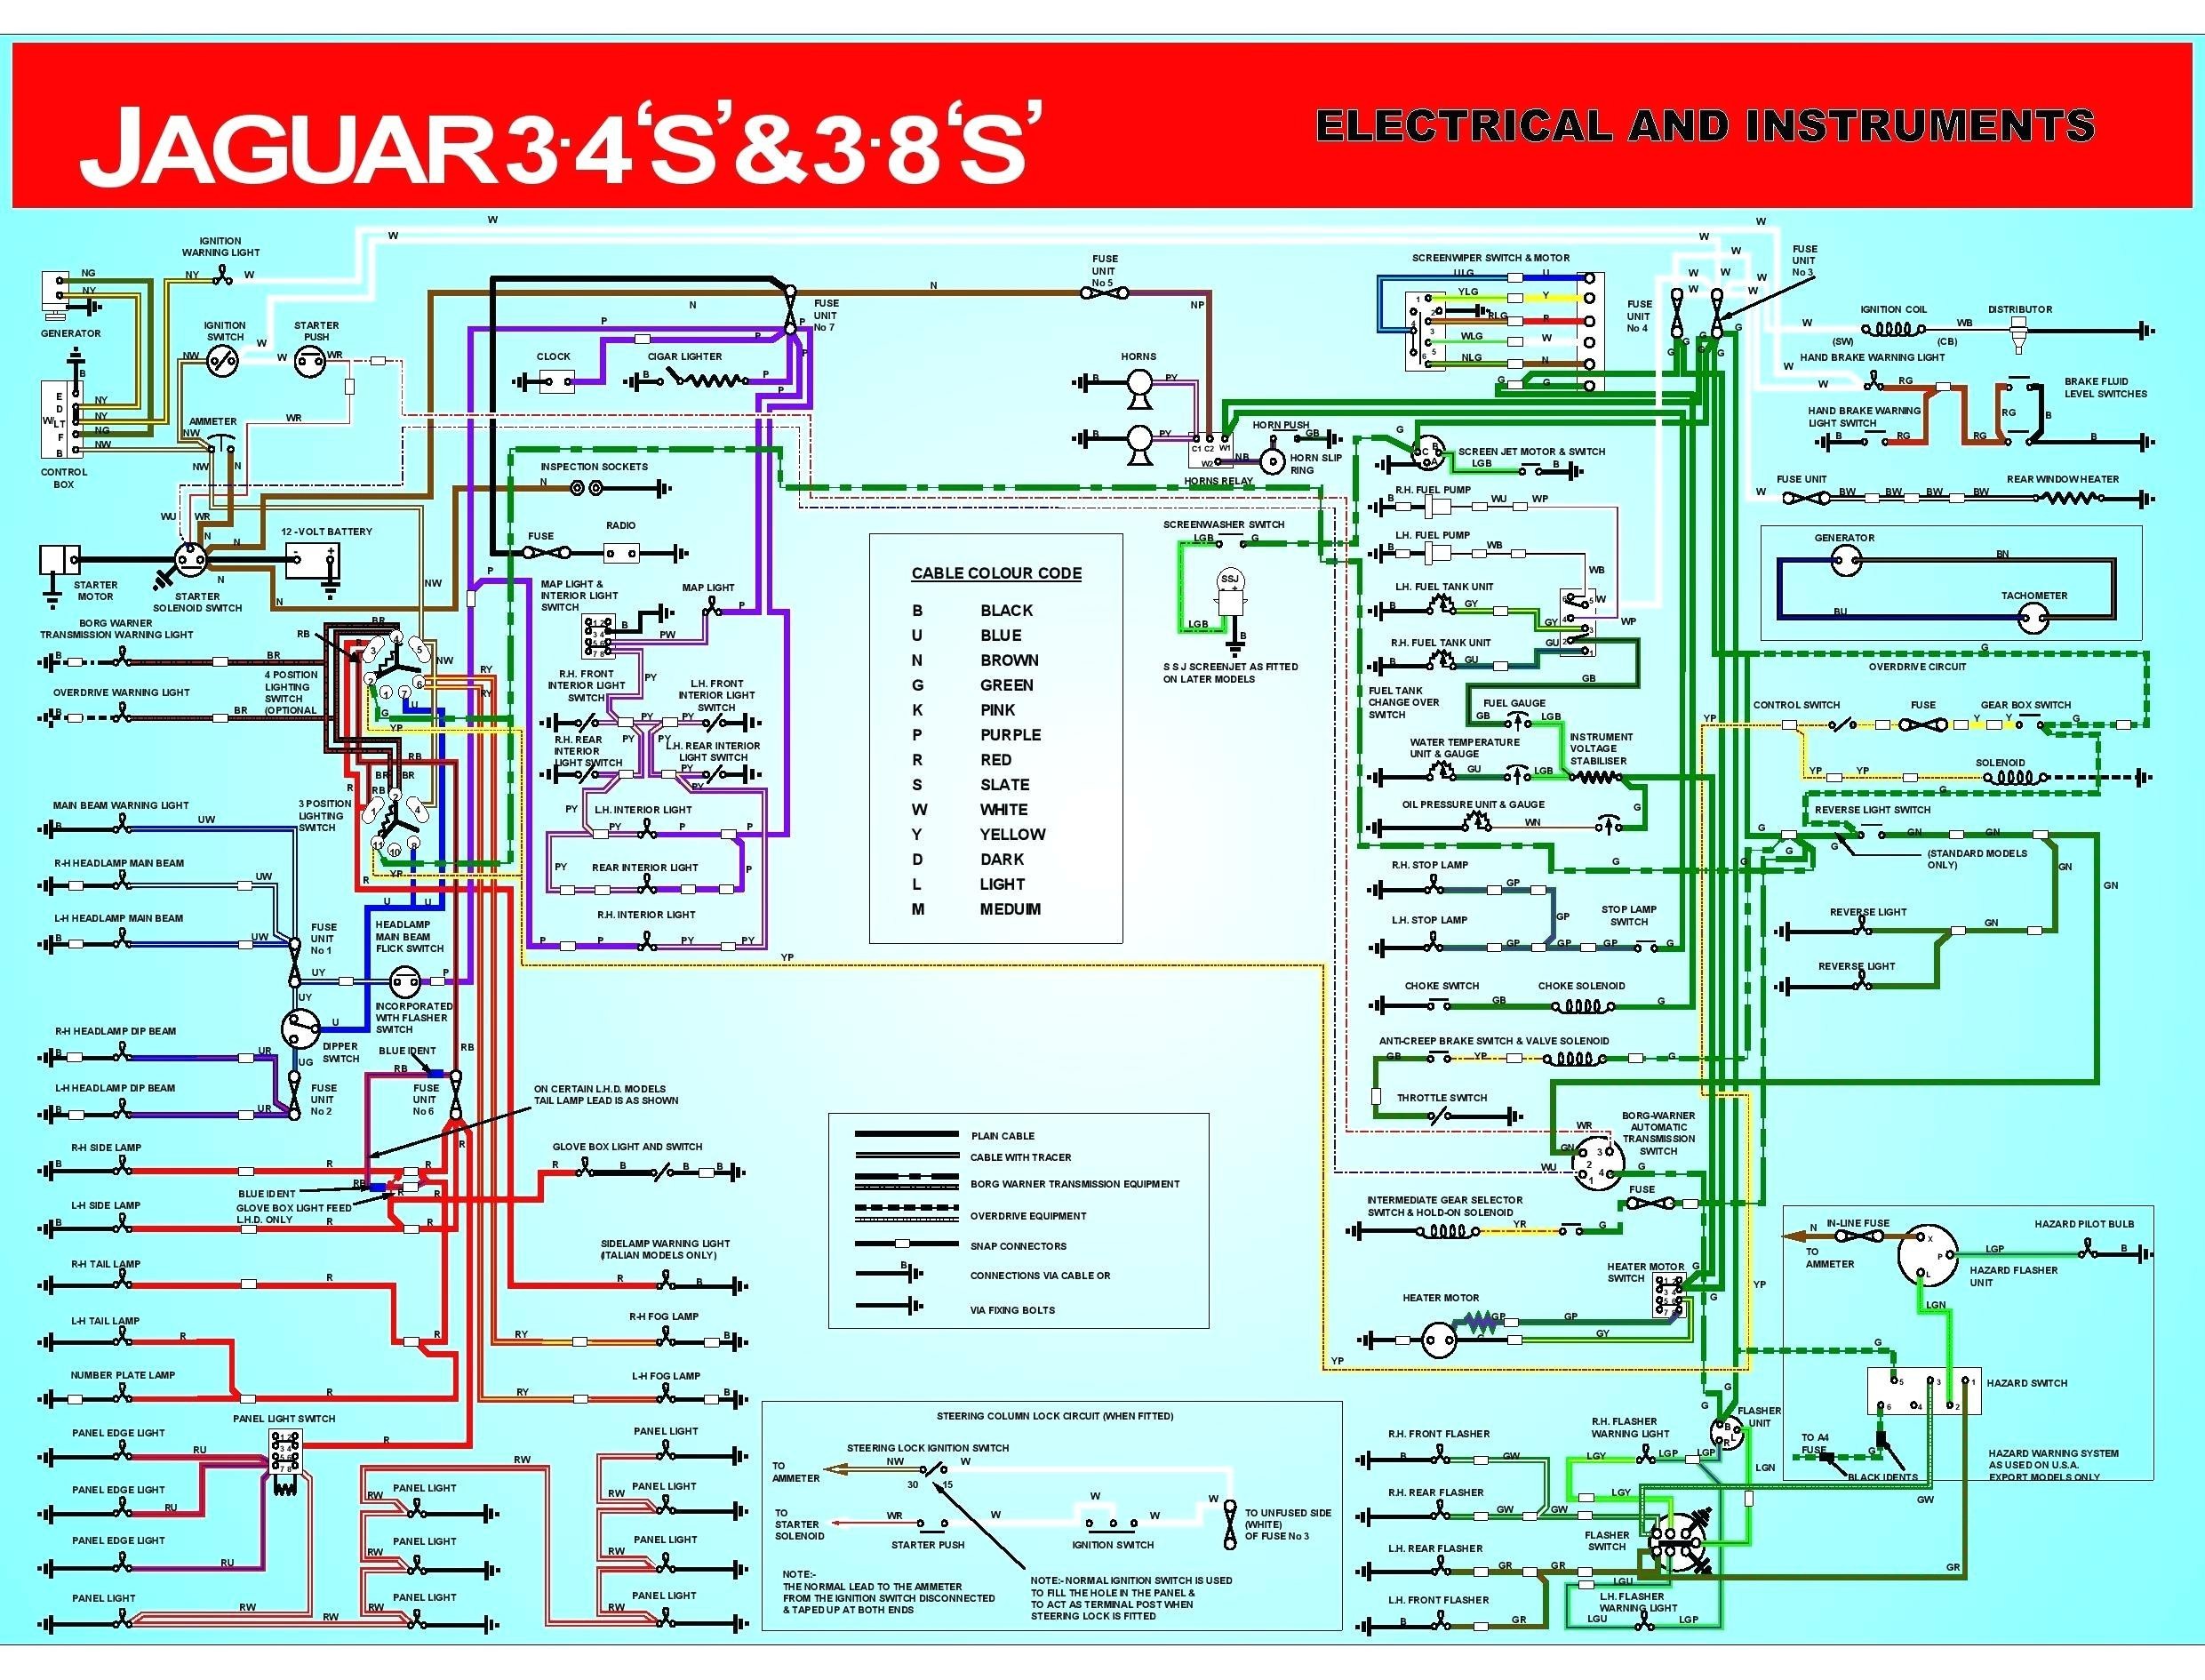 Jaguar S Type Wiring Diagram Wiring Diagram for 04 Jaguar X Type Wiring Diagram Used Of Jaguar S Type Wiring Diagram